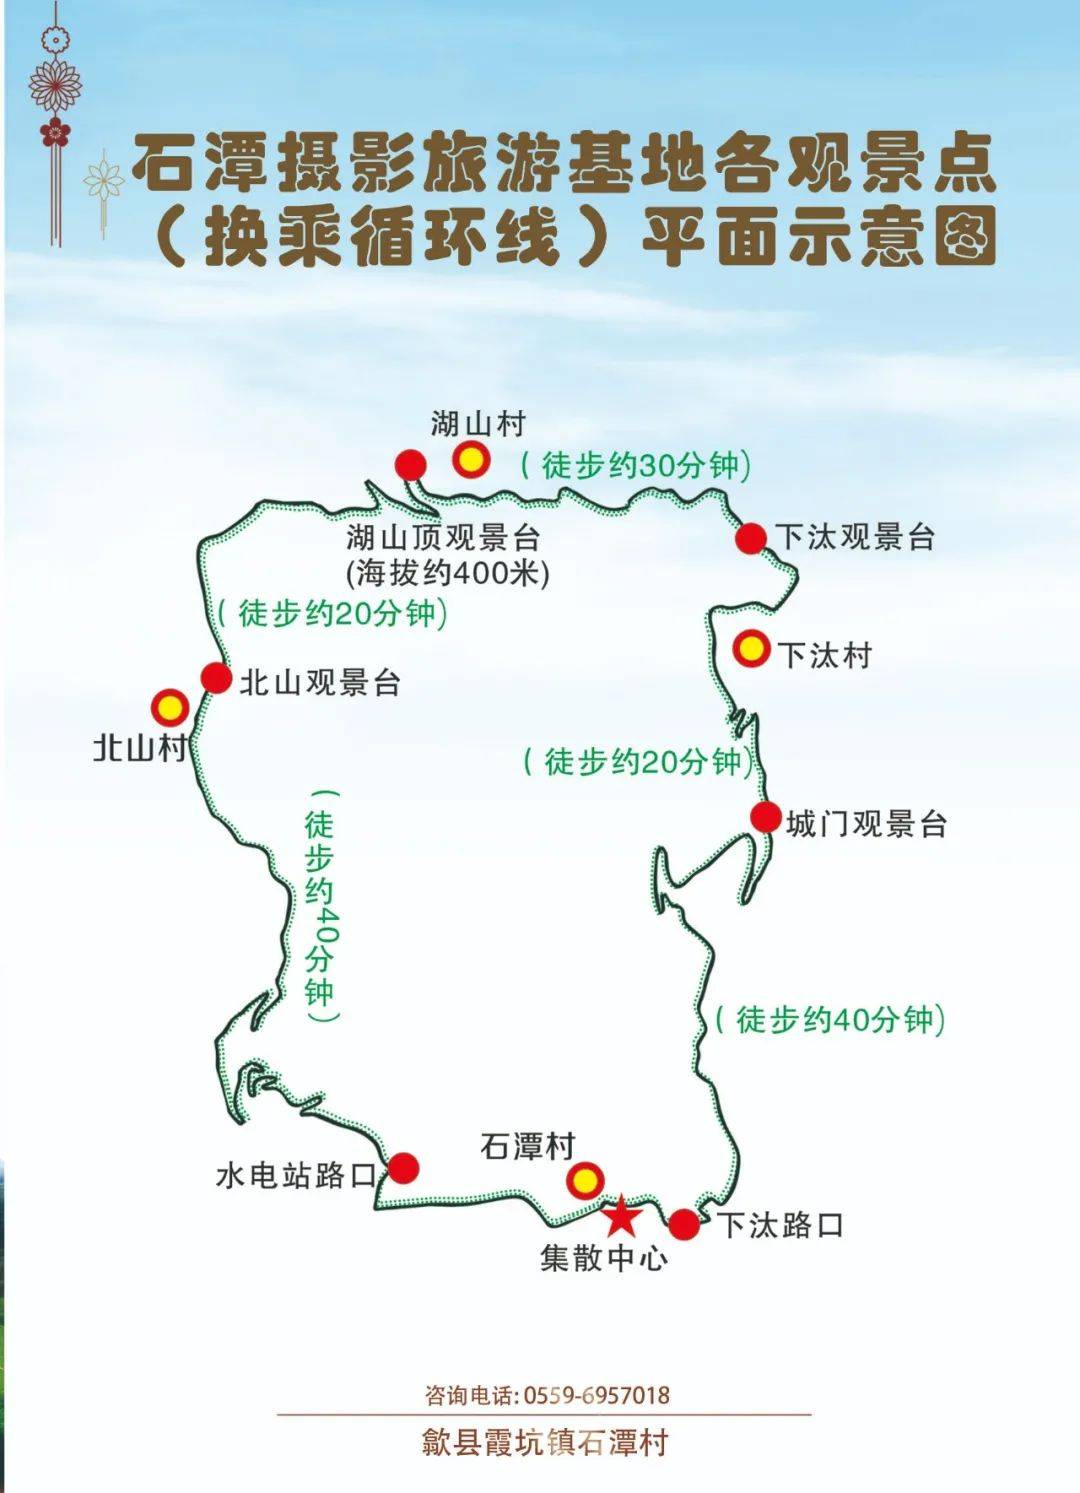 江苏347省道路线图图片